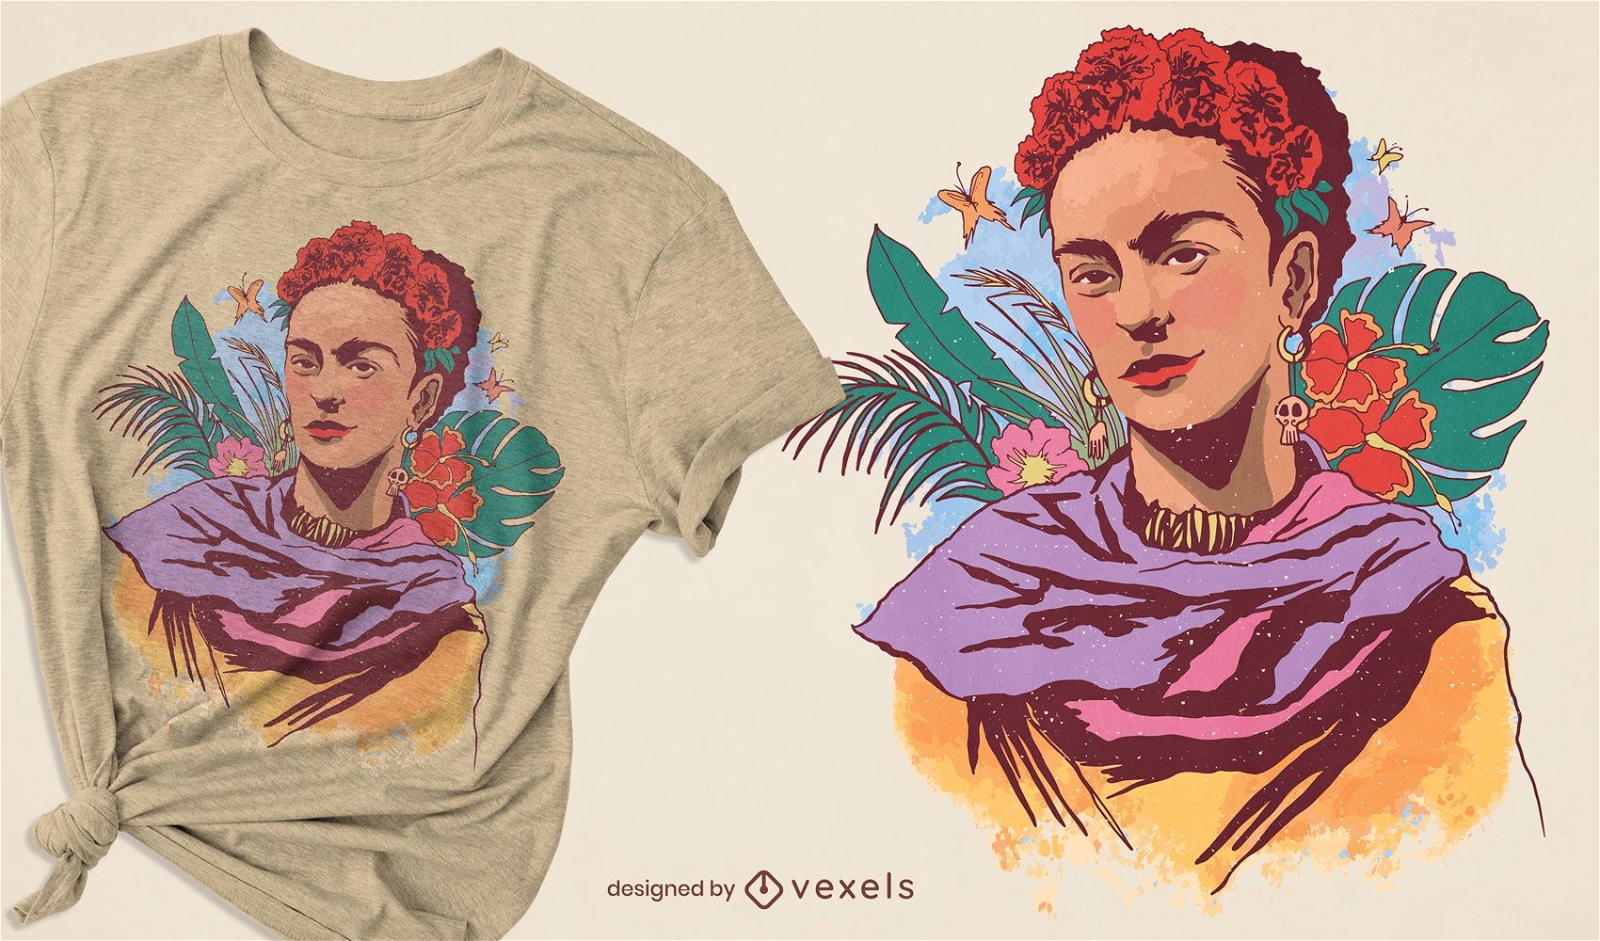 Dise?o de camiseta con retrato en color de Frida Kahlo.